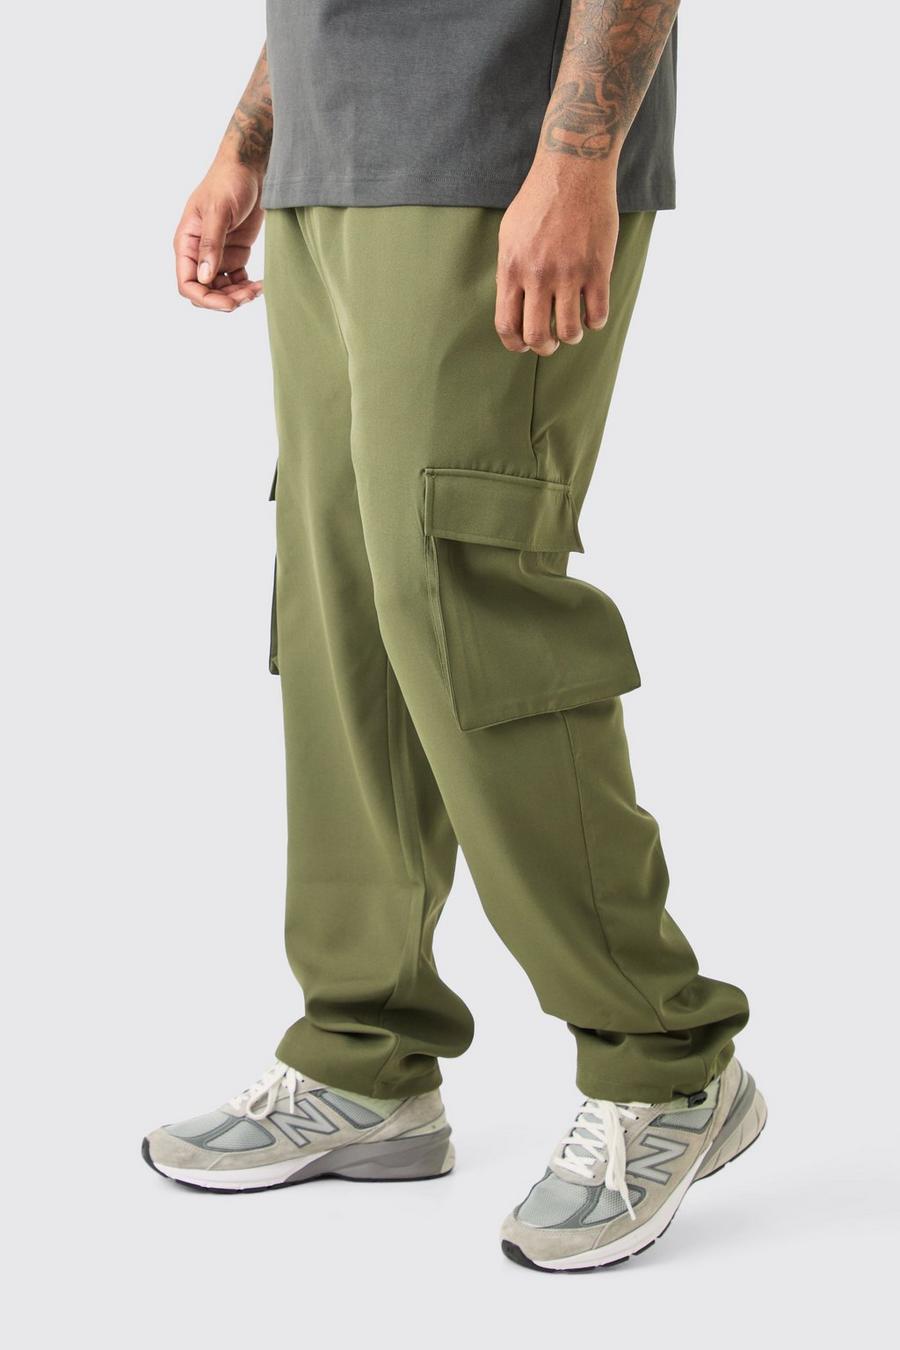 Pantalón Plus cargo pitillo elástico ligero, Khaki